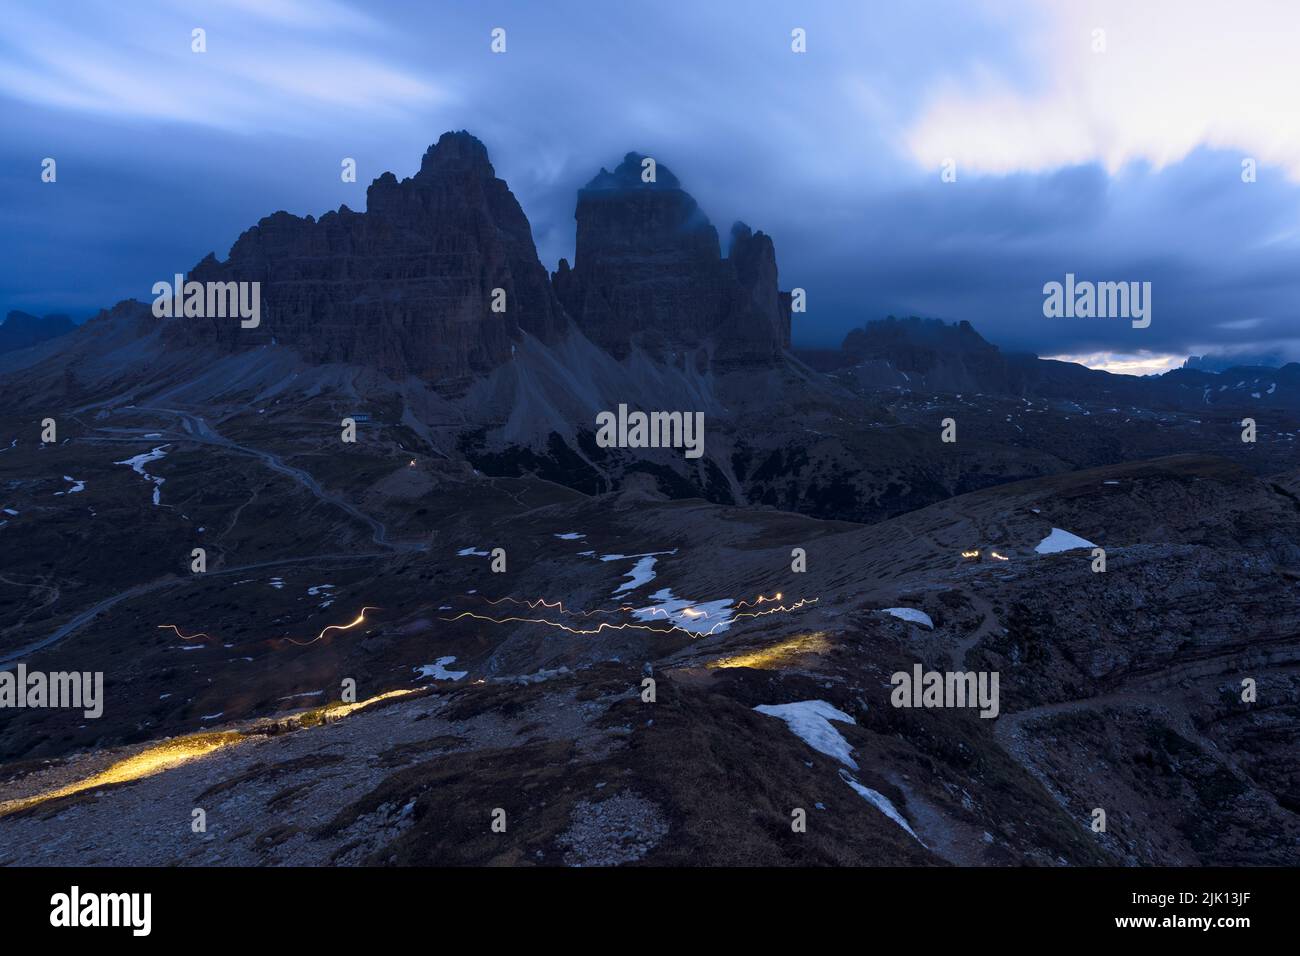 Wolken in der Abenddämmerung am nebligen Himmel über den majestätischen Felsen von Tre Cime di Lavaredo, Dolomiten, Südtirol, Italien, Europa Stockfoto